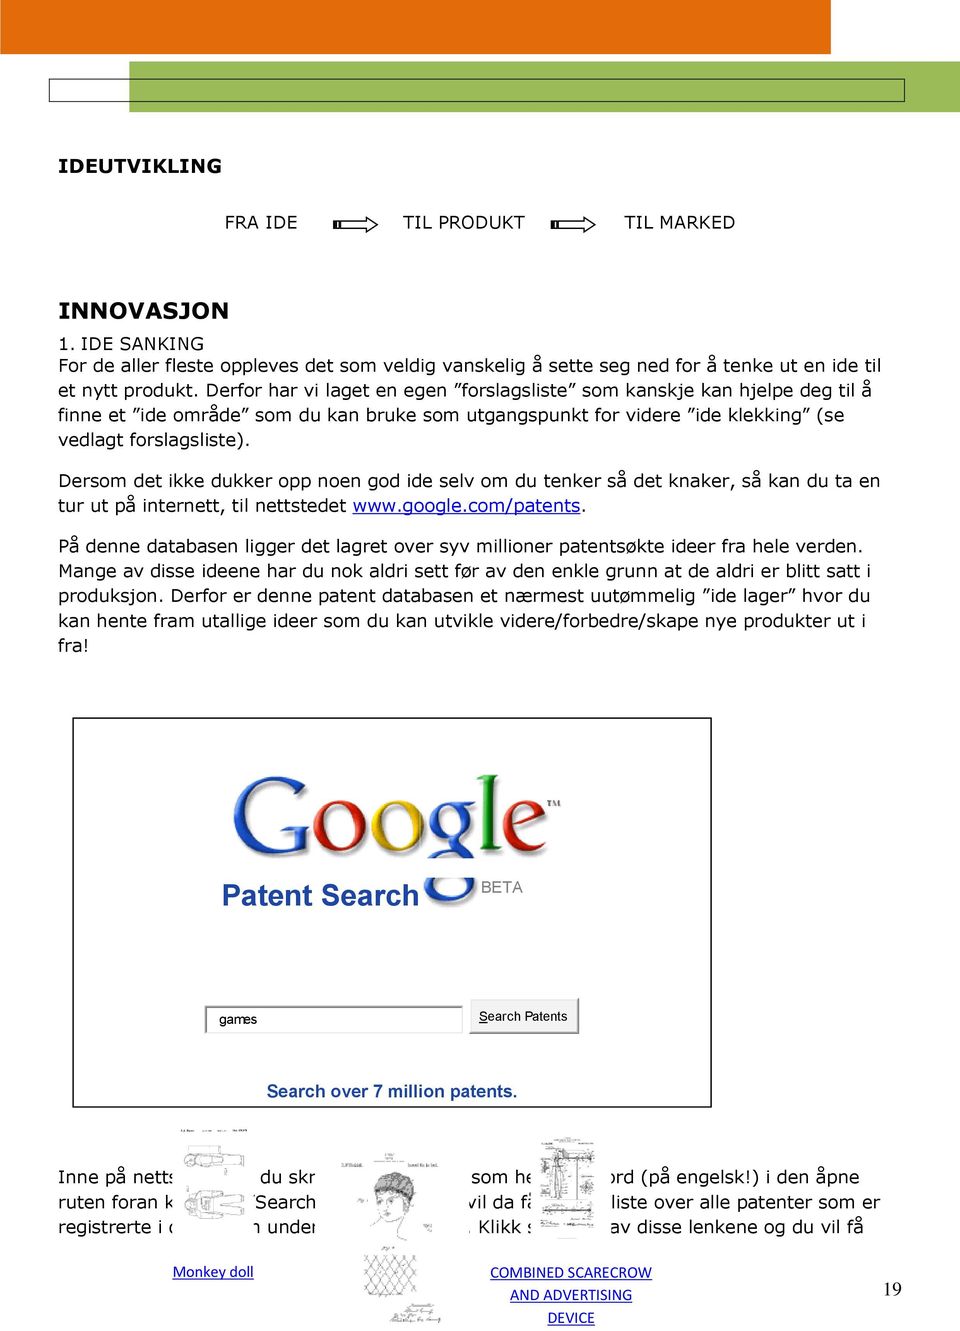 Dersom det ikke dukker opp noen god ide selv om du tenker så det knaker, så kan du ta en tur ut på internett, til nettstedet www.google.com/patents.